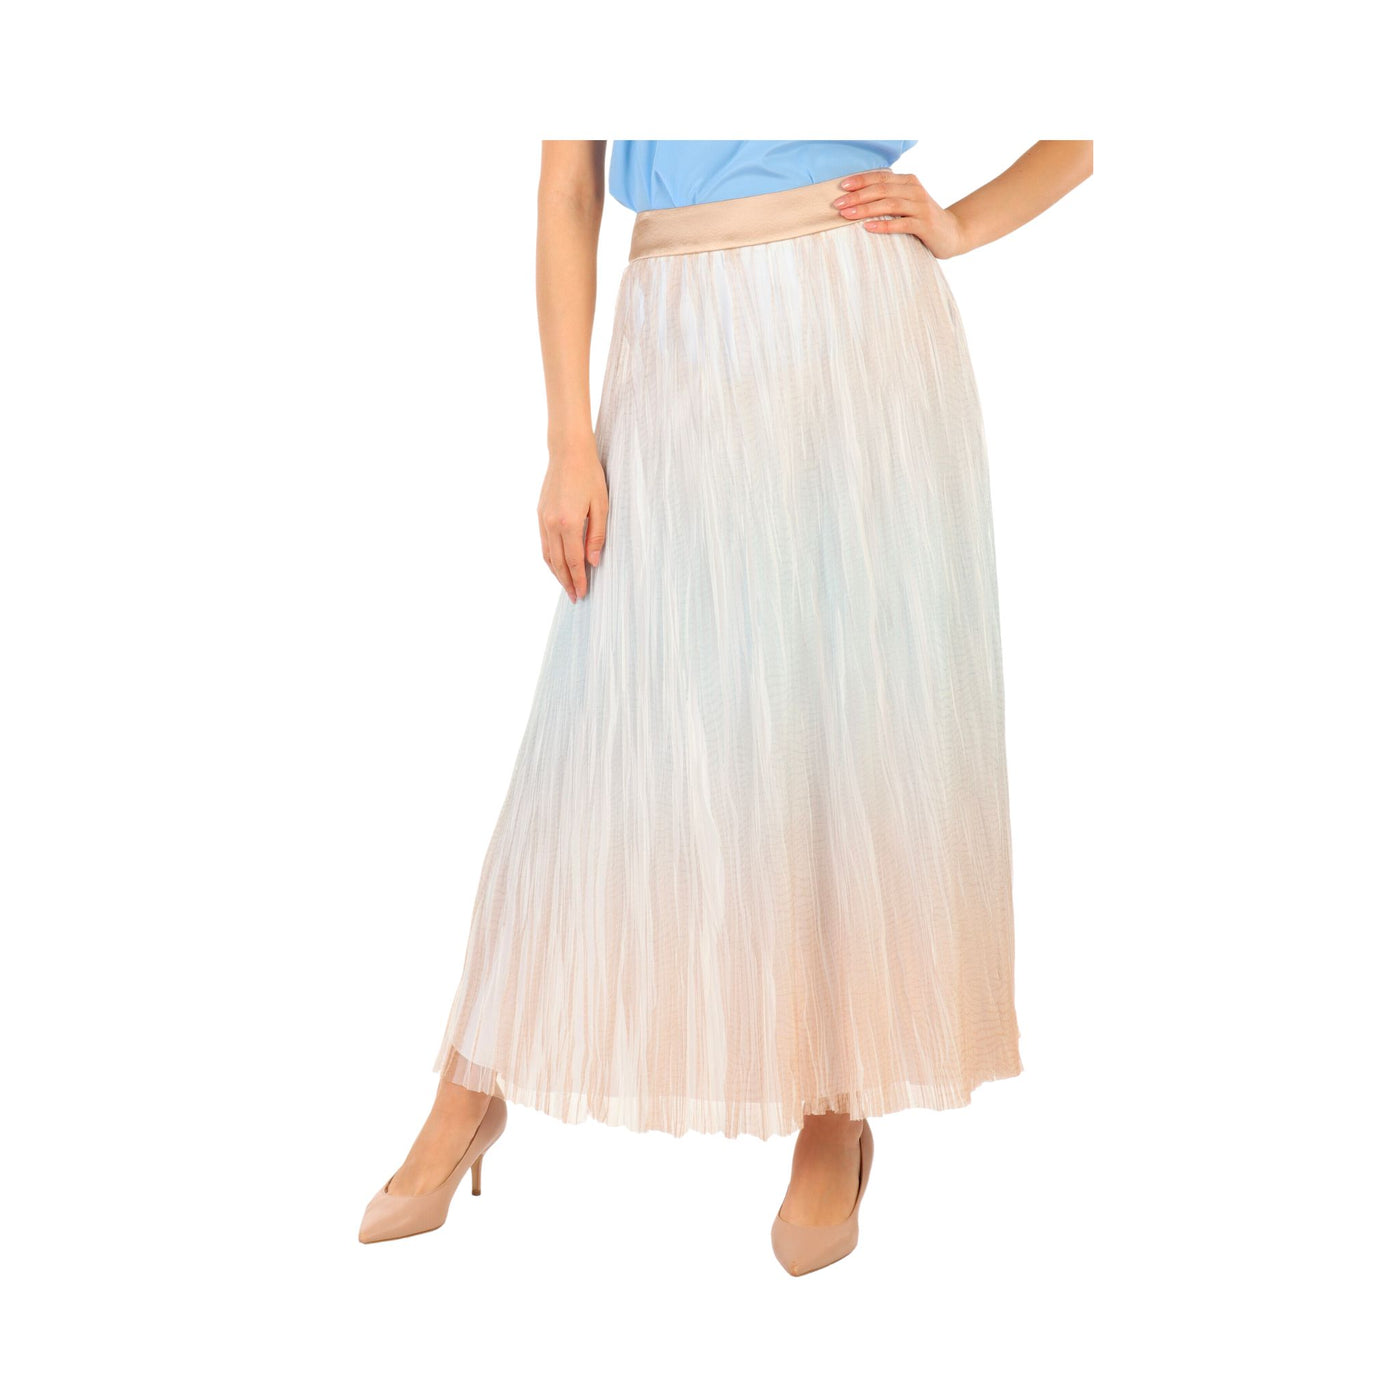 Shaded patterned women's skirt